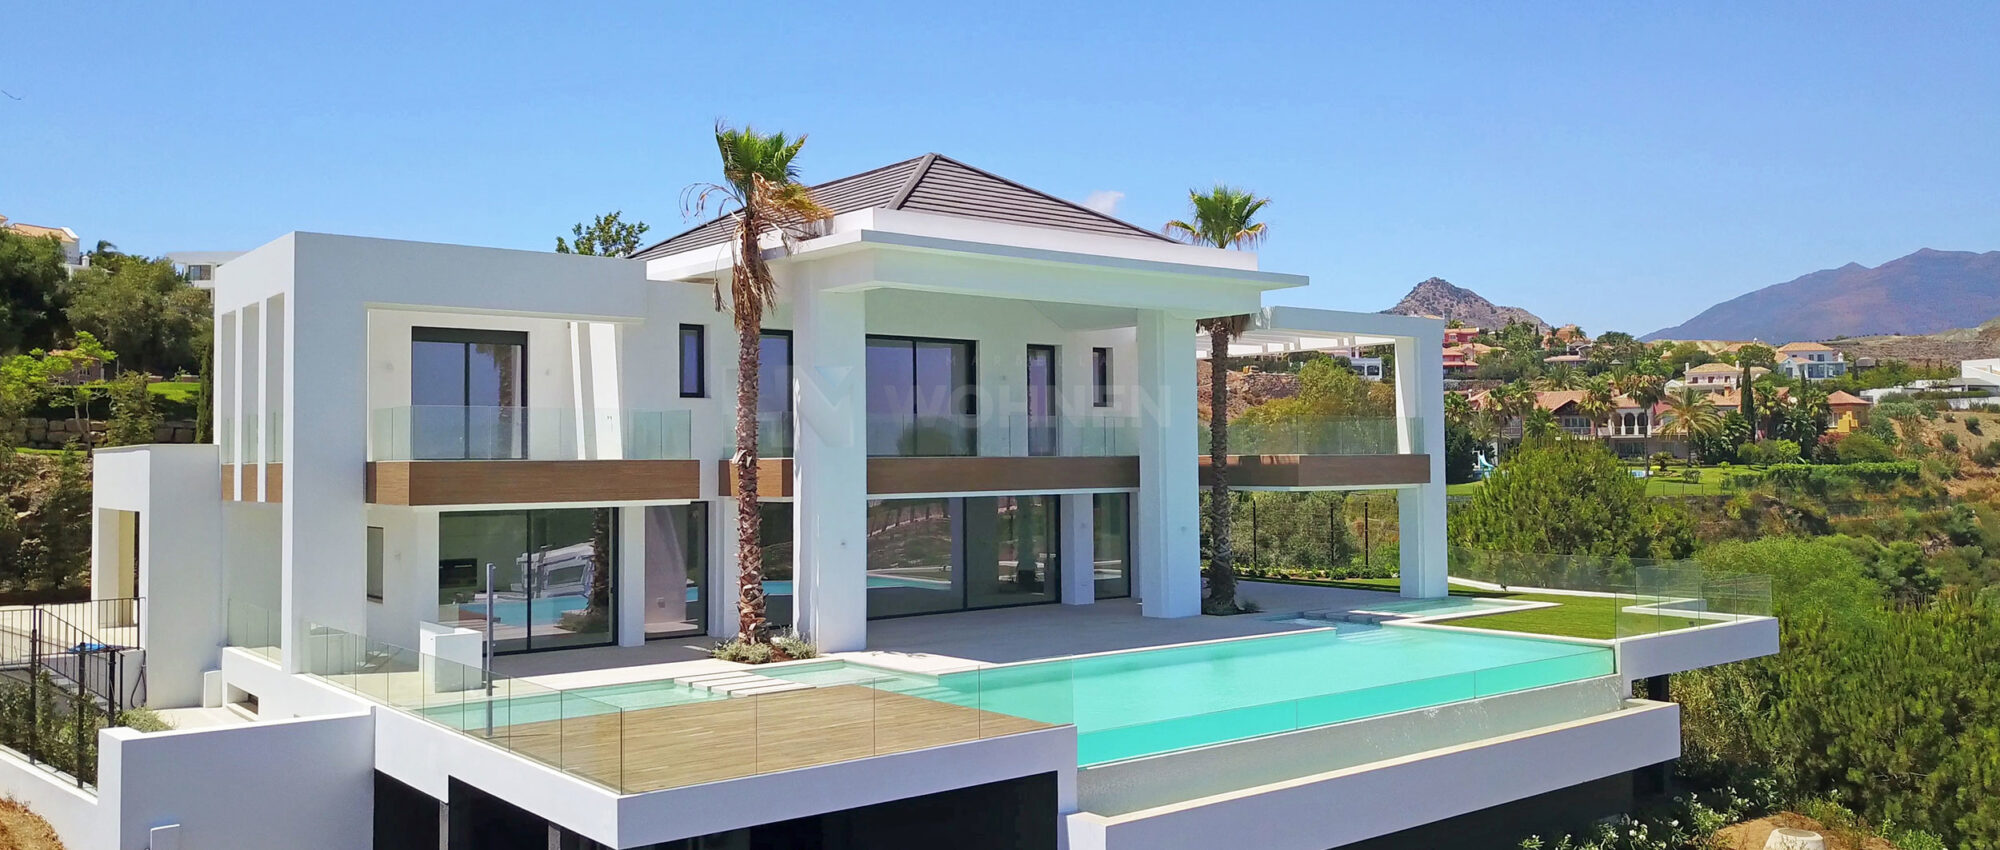 Fantastische moderne Villa mit spektakulärem Blick auf das Meer und den Golf